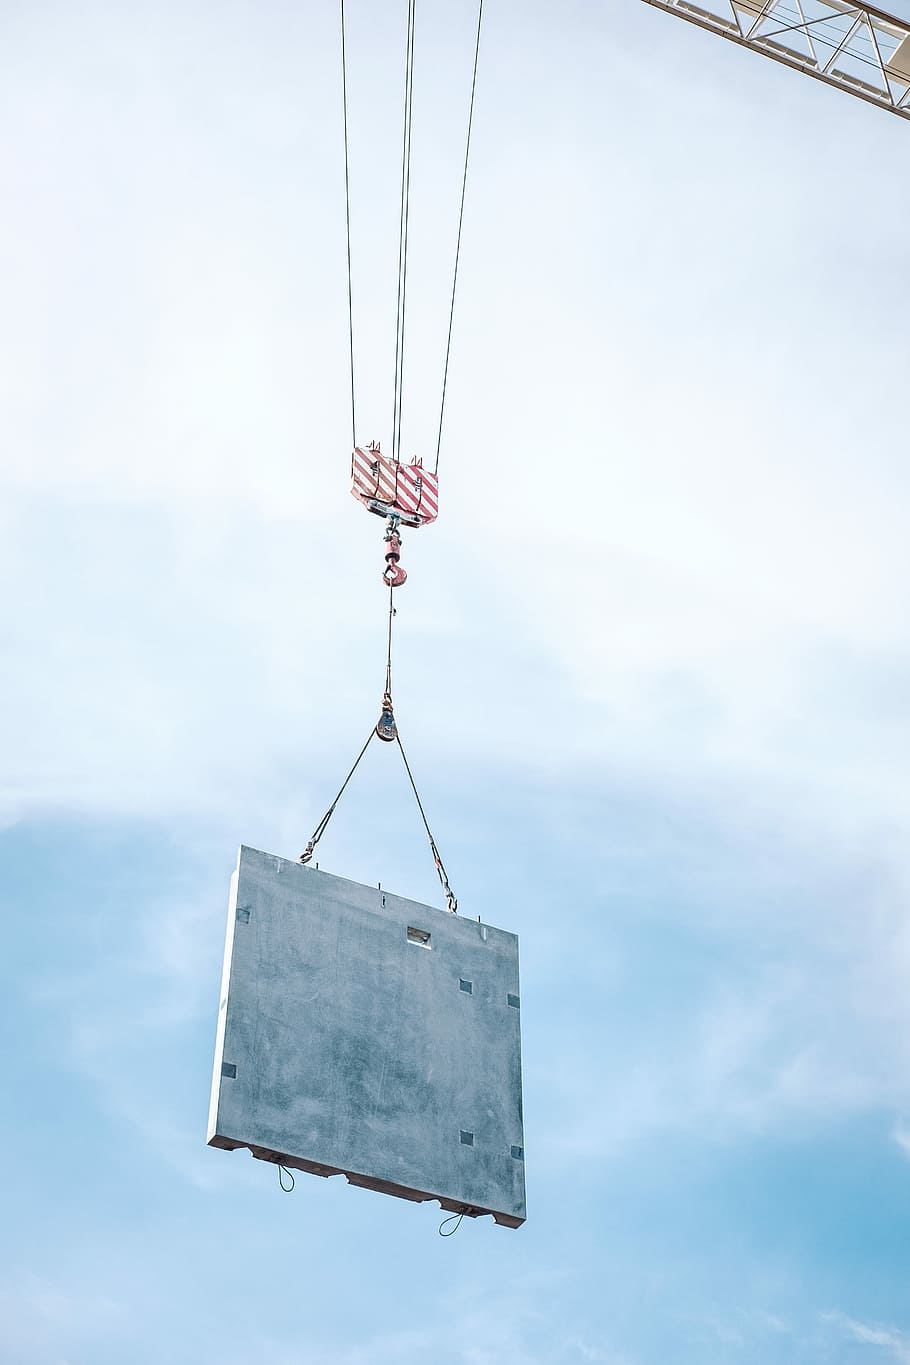 Building a City - Condos and Cranes, hanging gray board, concrete